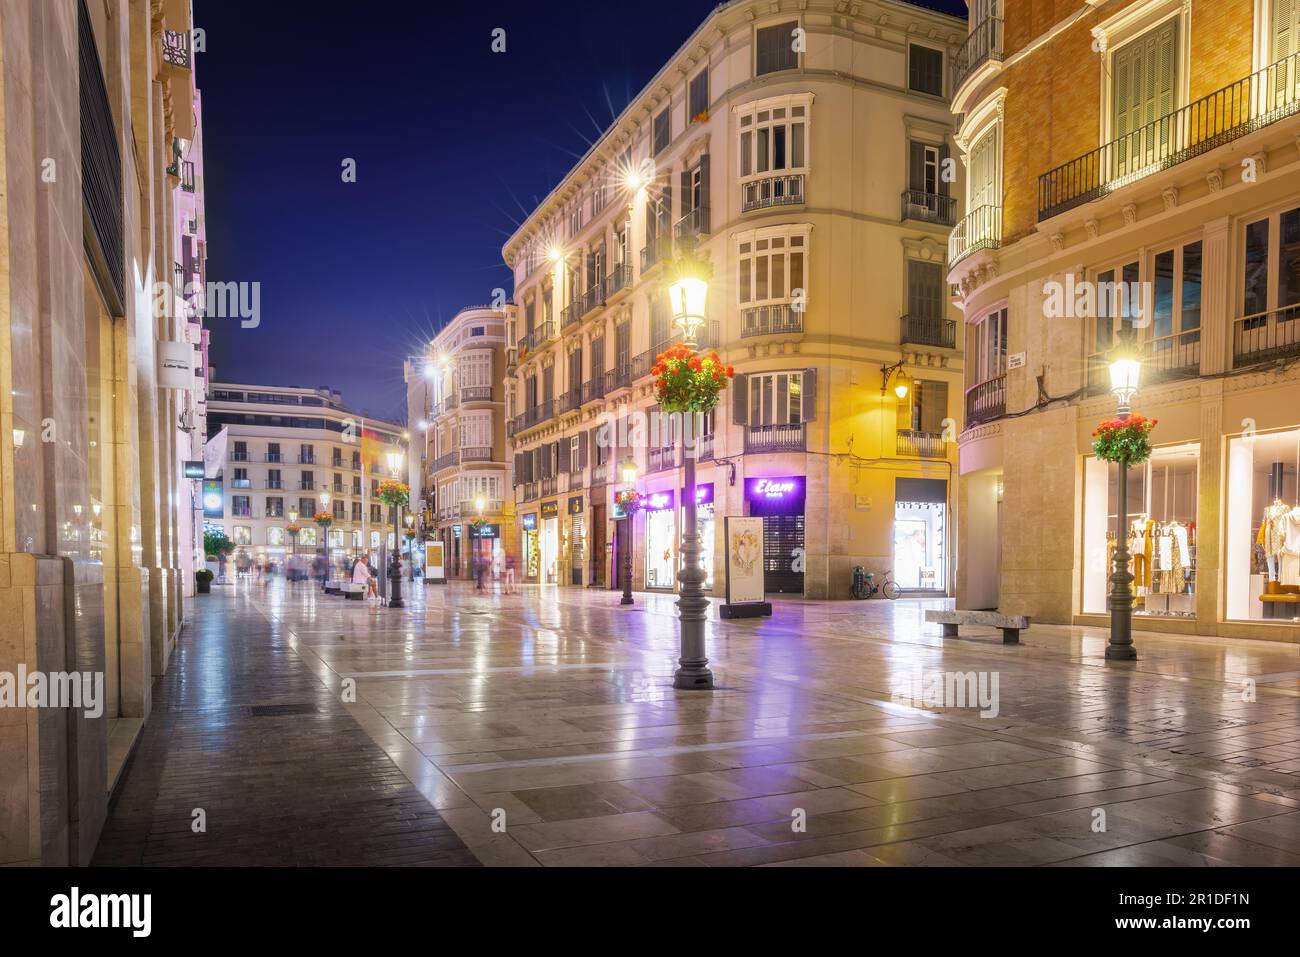 Calle Larios de nuit - célèbre rue piétonne et commerçante - Malaga, Andalousie, Espagne Banque D'Images